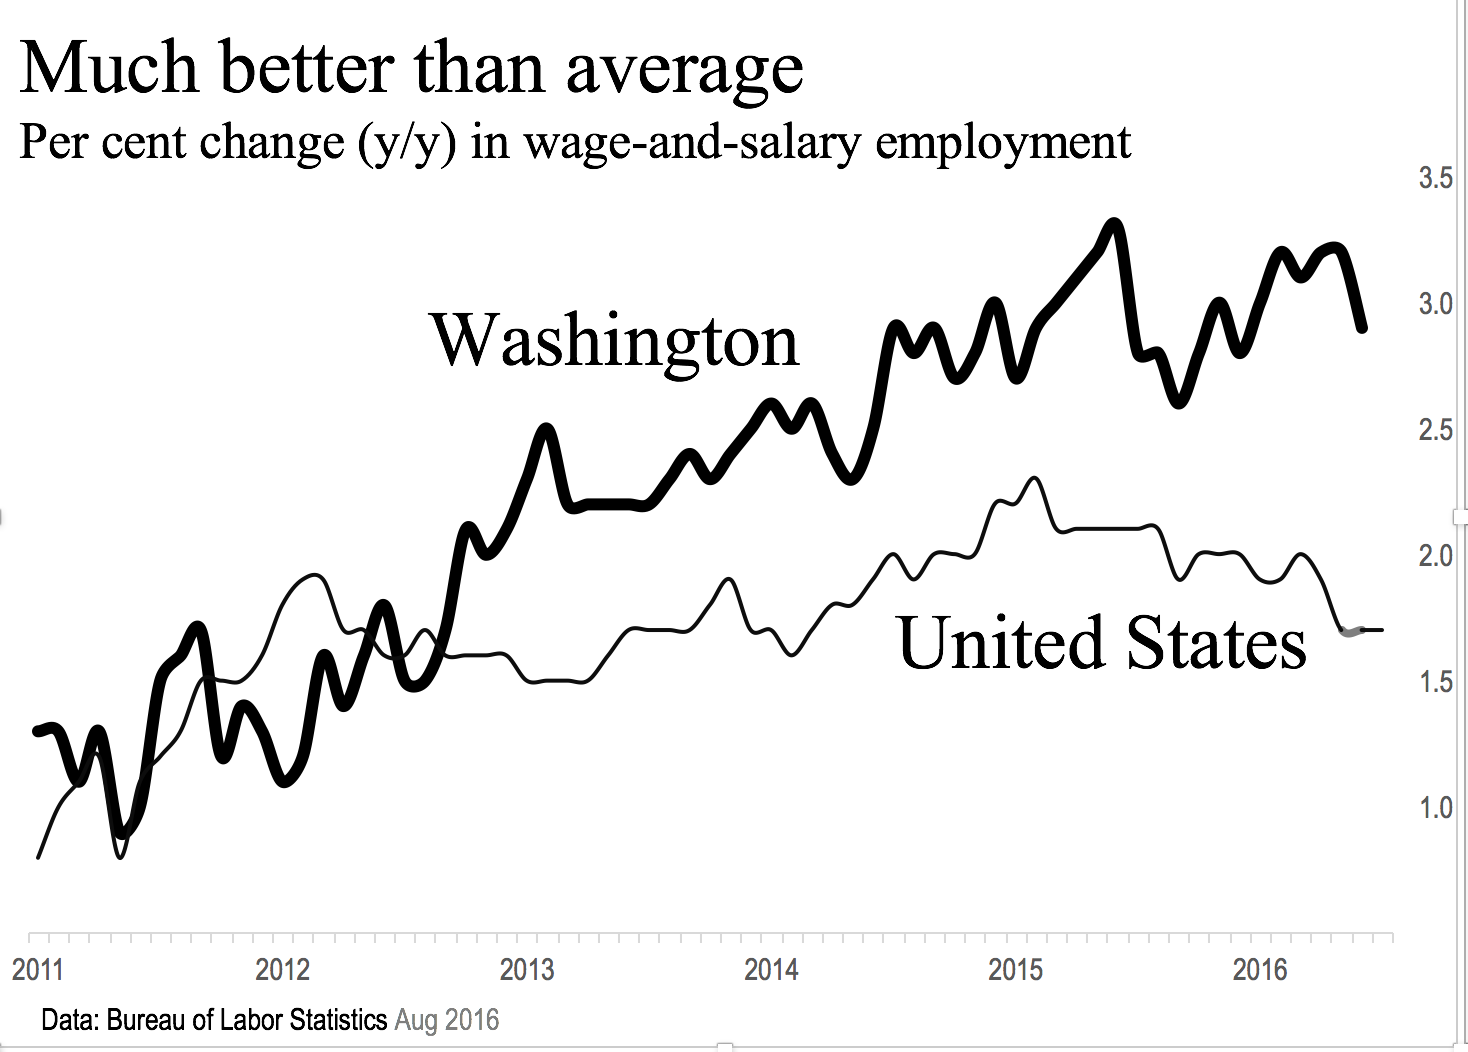 WA employment above average